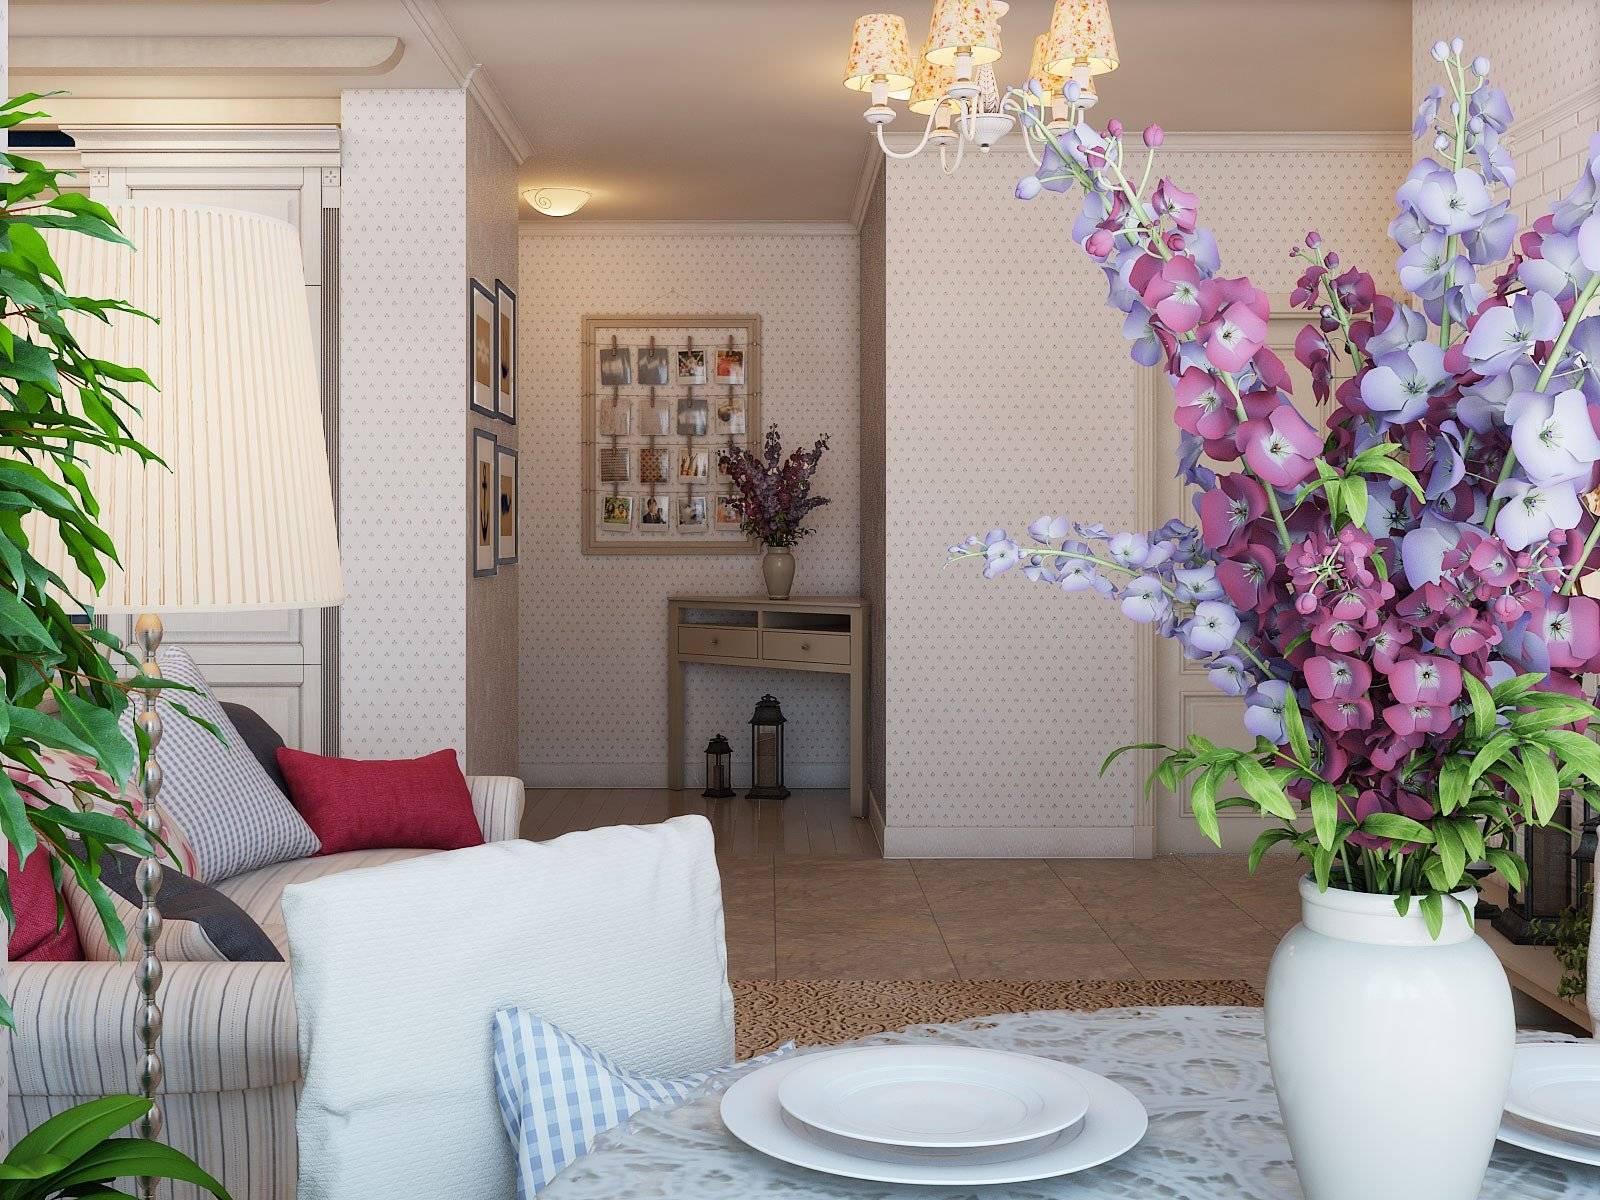 Комнатные растения и цветы в интерьере жилого дома: проект для гостиной - 48 фото